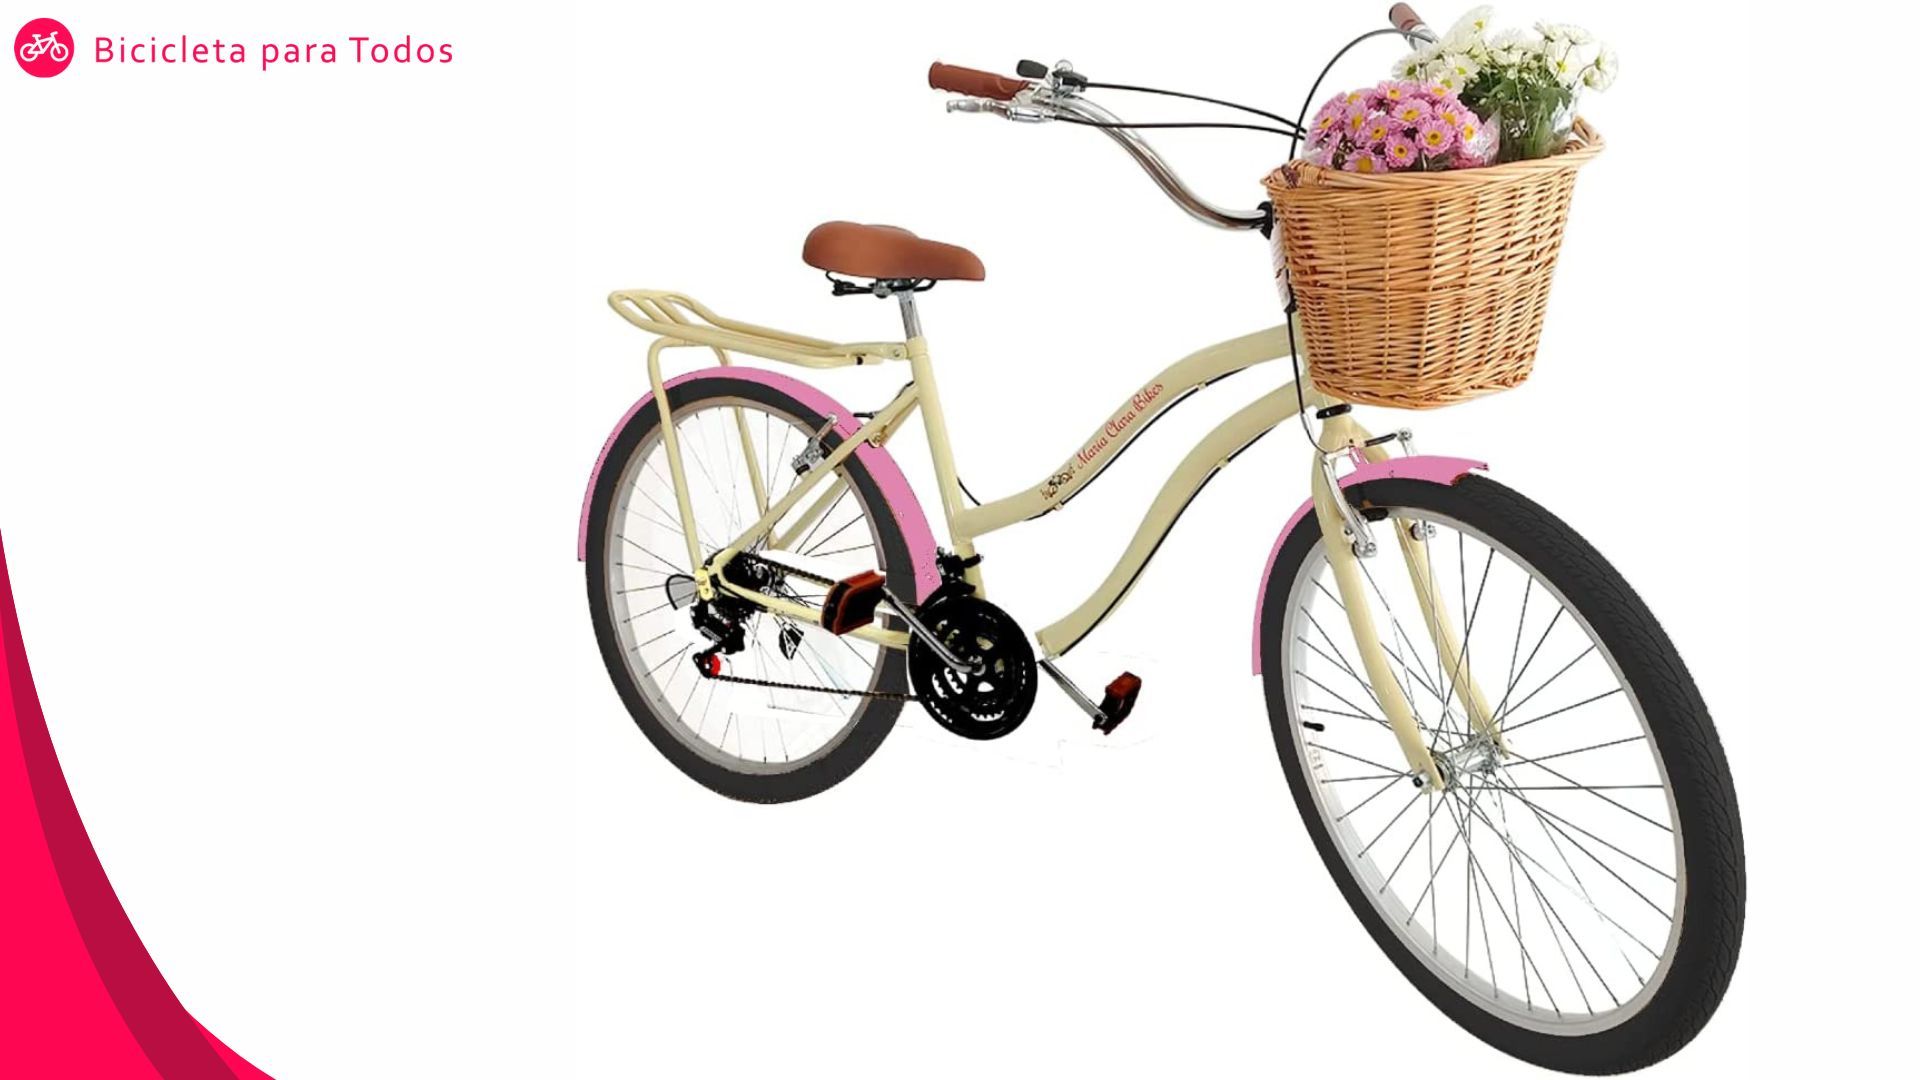  Bicicleta Vintage Retrô Feminina 